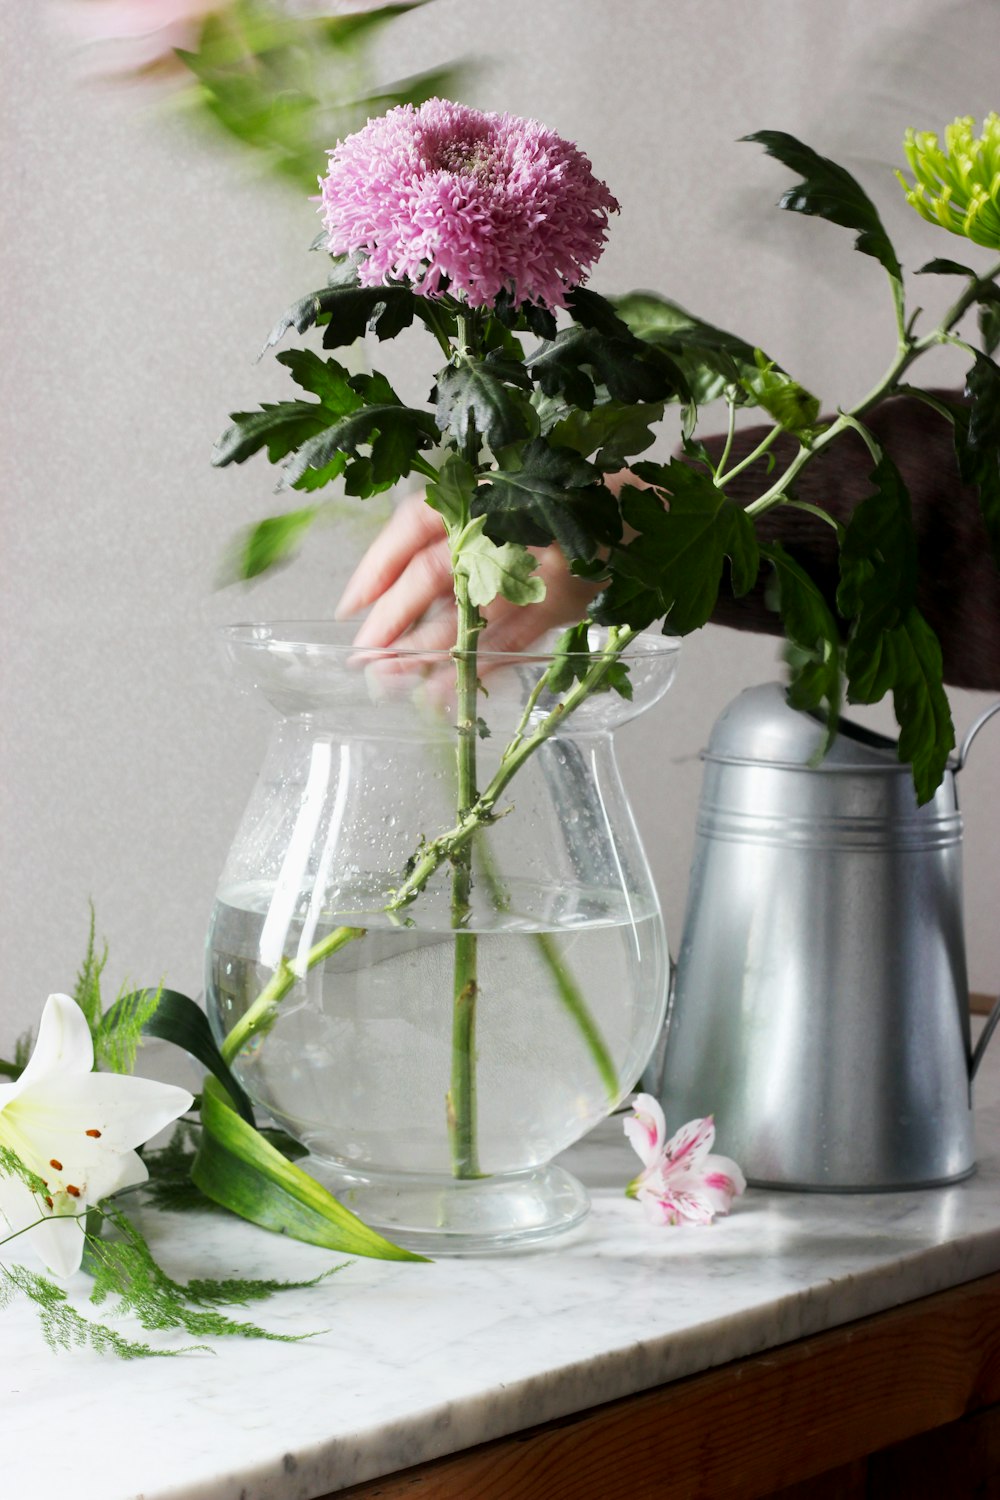 purple carnation flower on glass flower vase